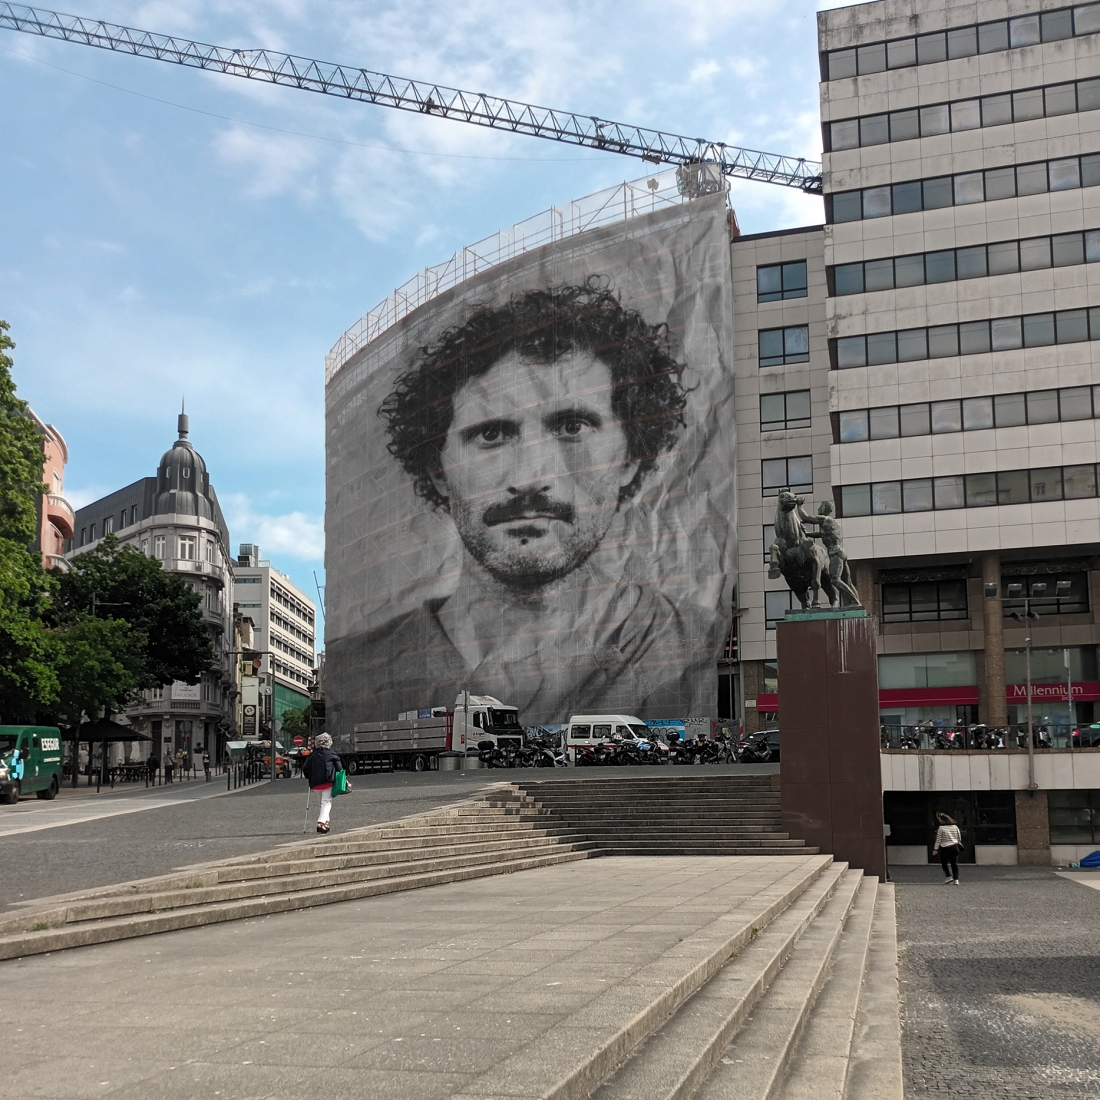 Fotografia a cores mostra a Praça D. João I, em frente ao Rivoli. Um grande retrato a preto e branco de Nuno Preto cobre a fachada de um edifício em construção.